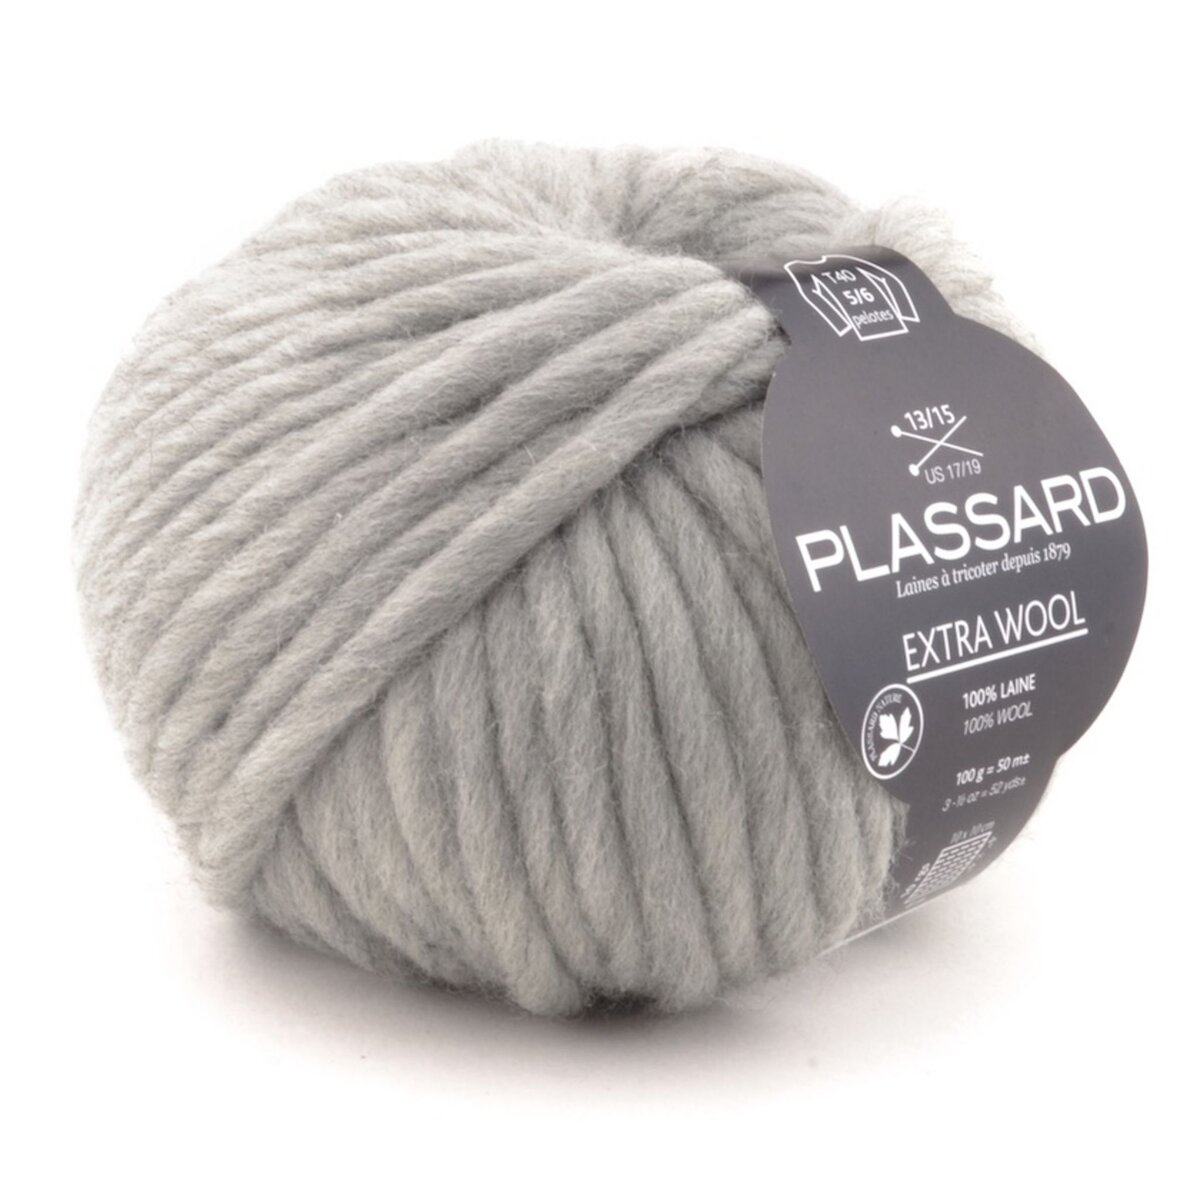 Plassard Grosse laine mèche Extra Wool 154 Gris 100% Laine pas